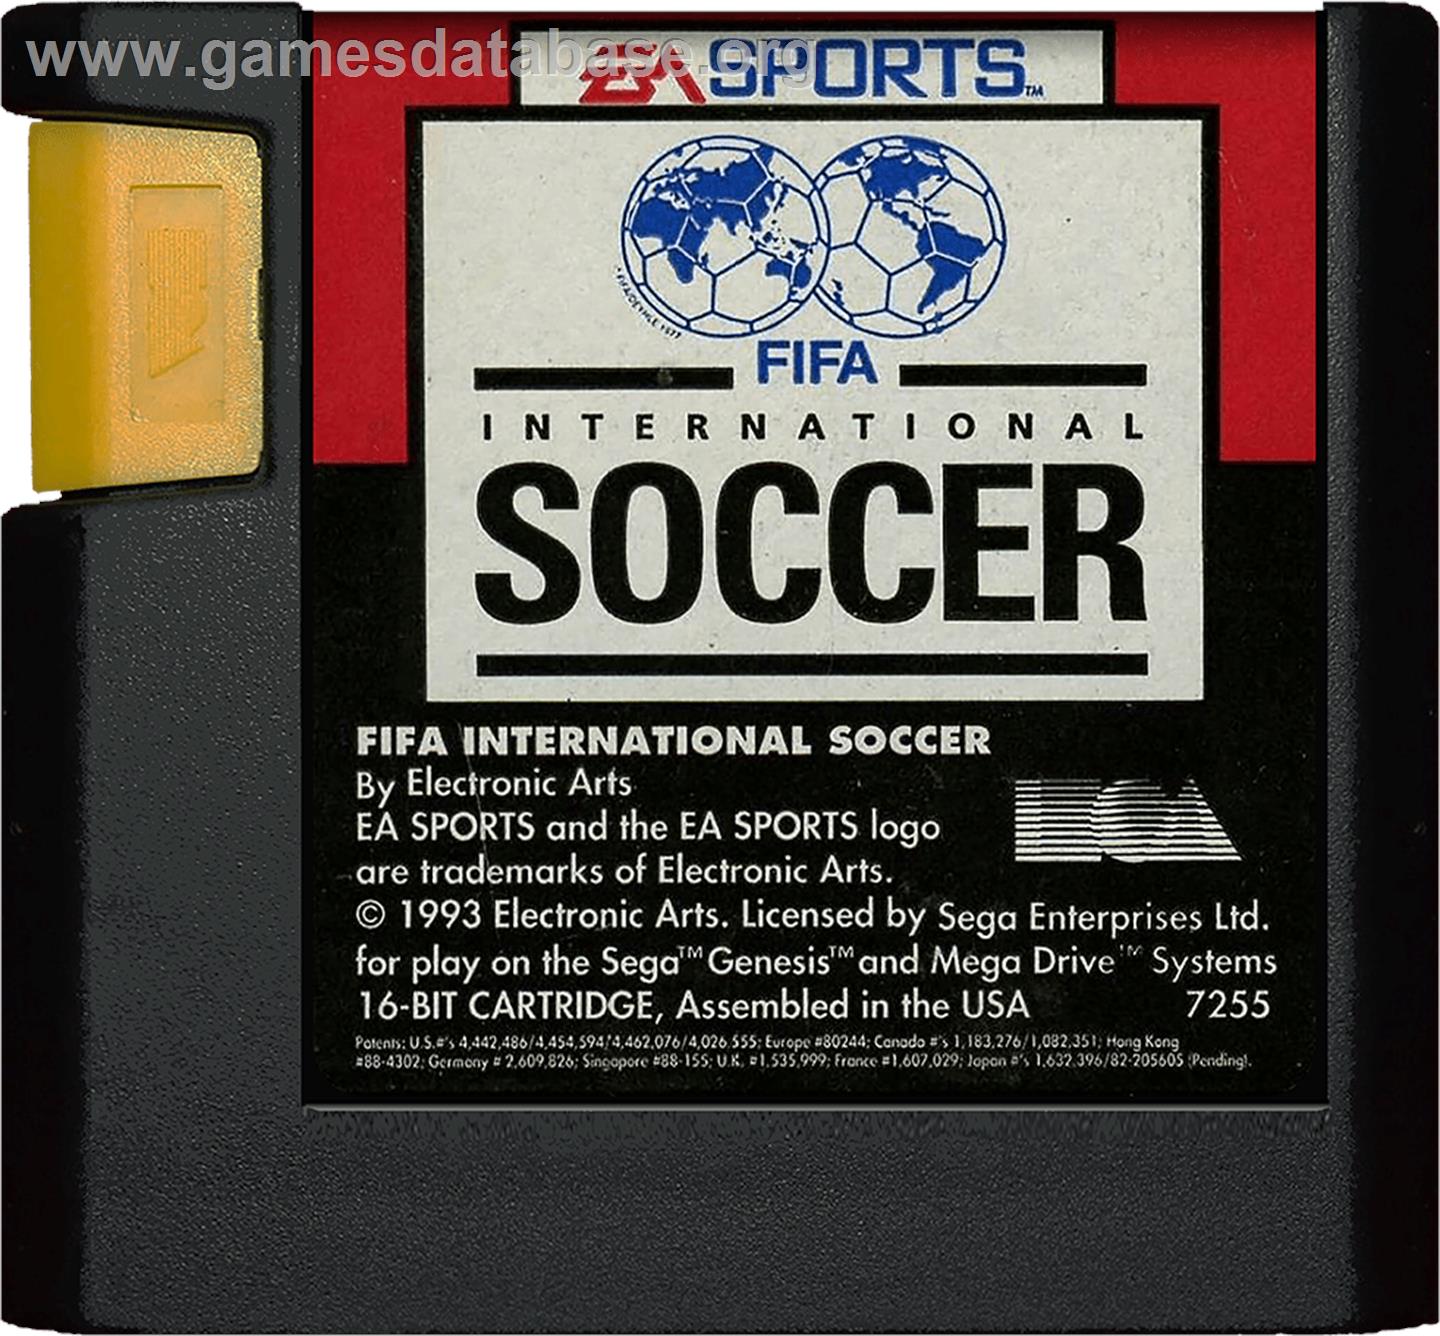 FIFA International Soccer - Sega Genesis - Artwork - Cartridge